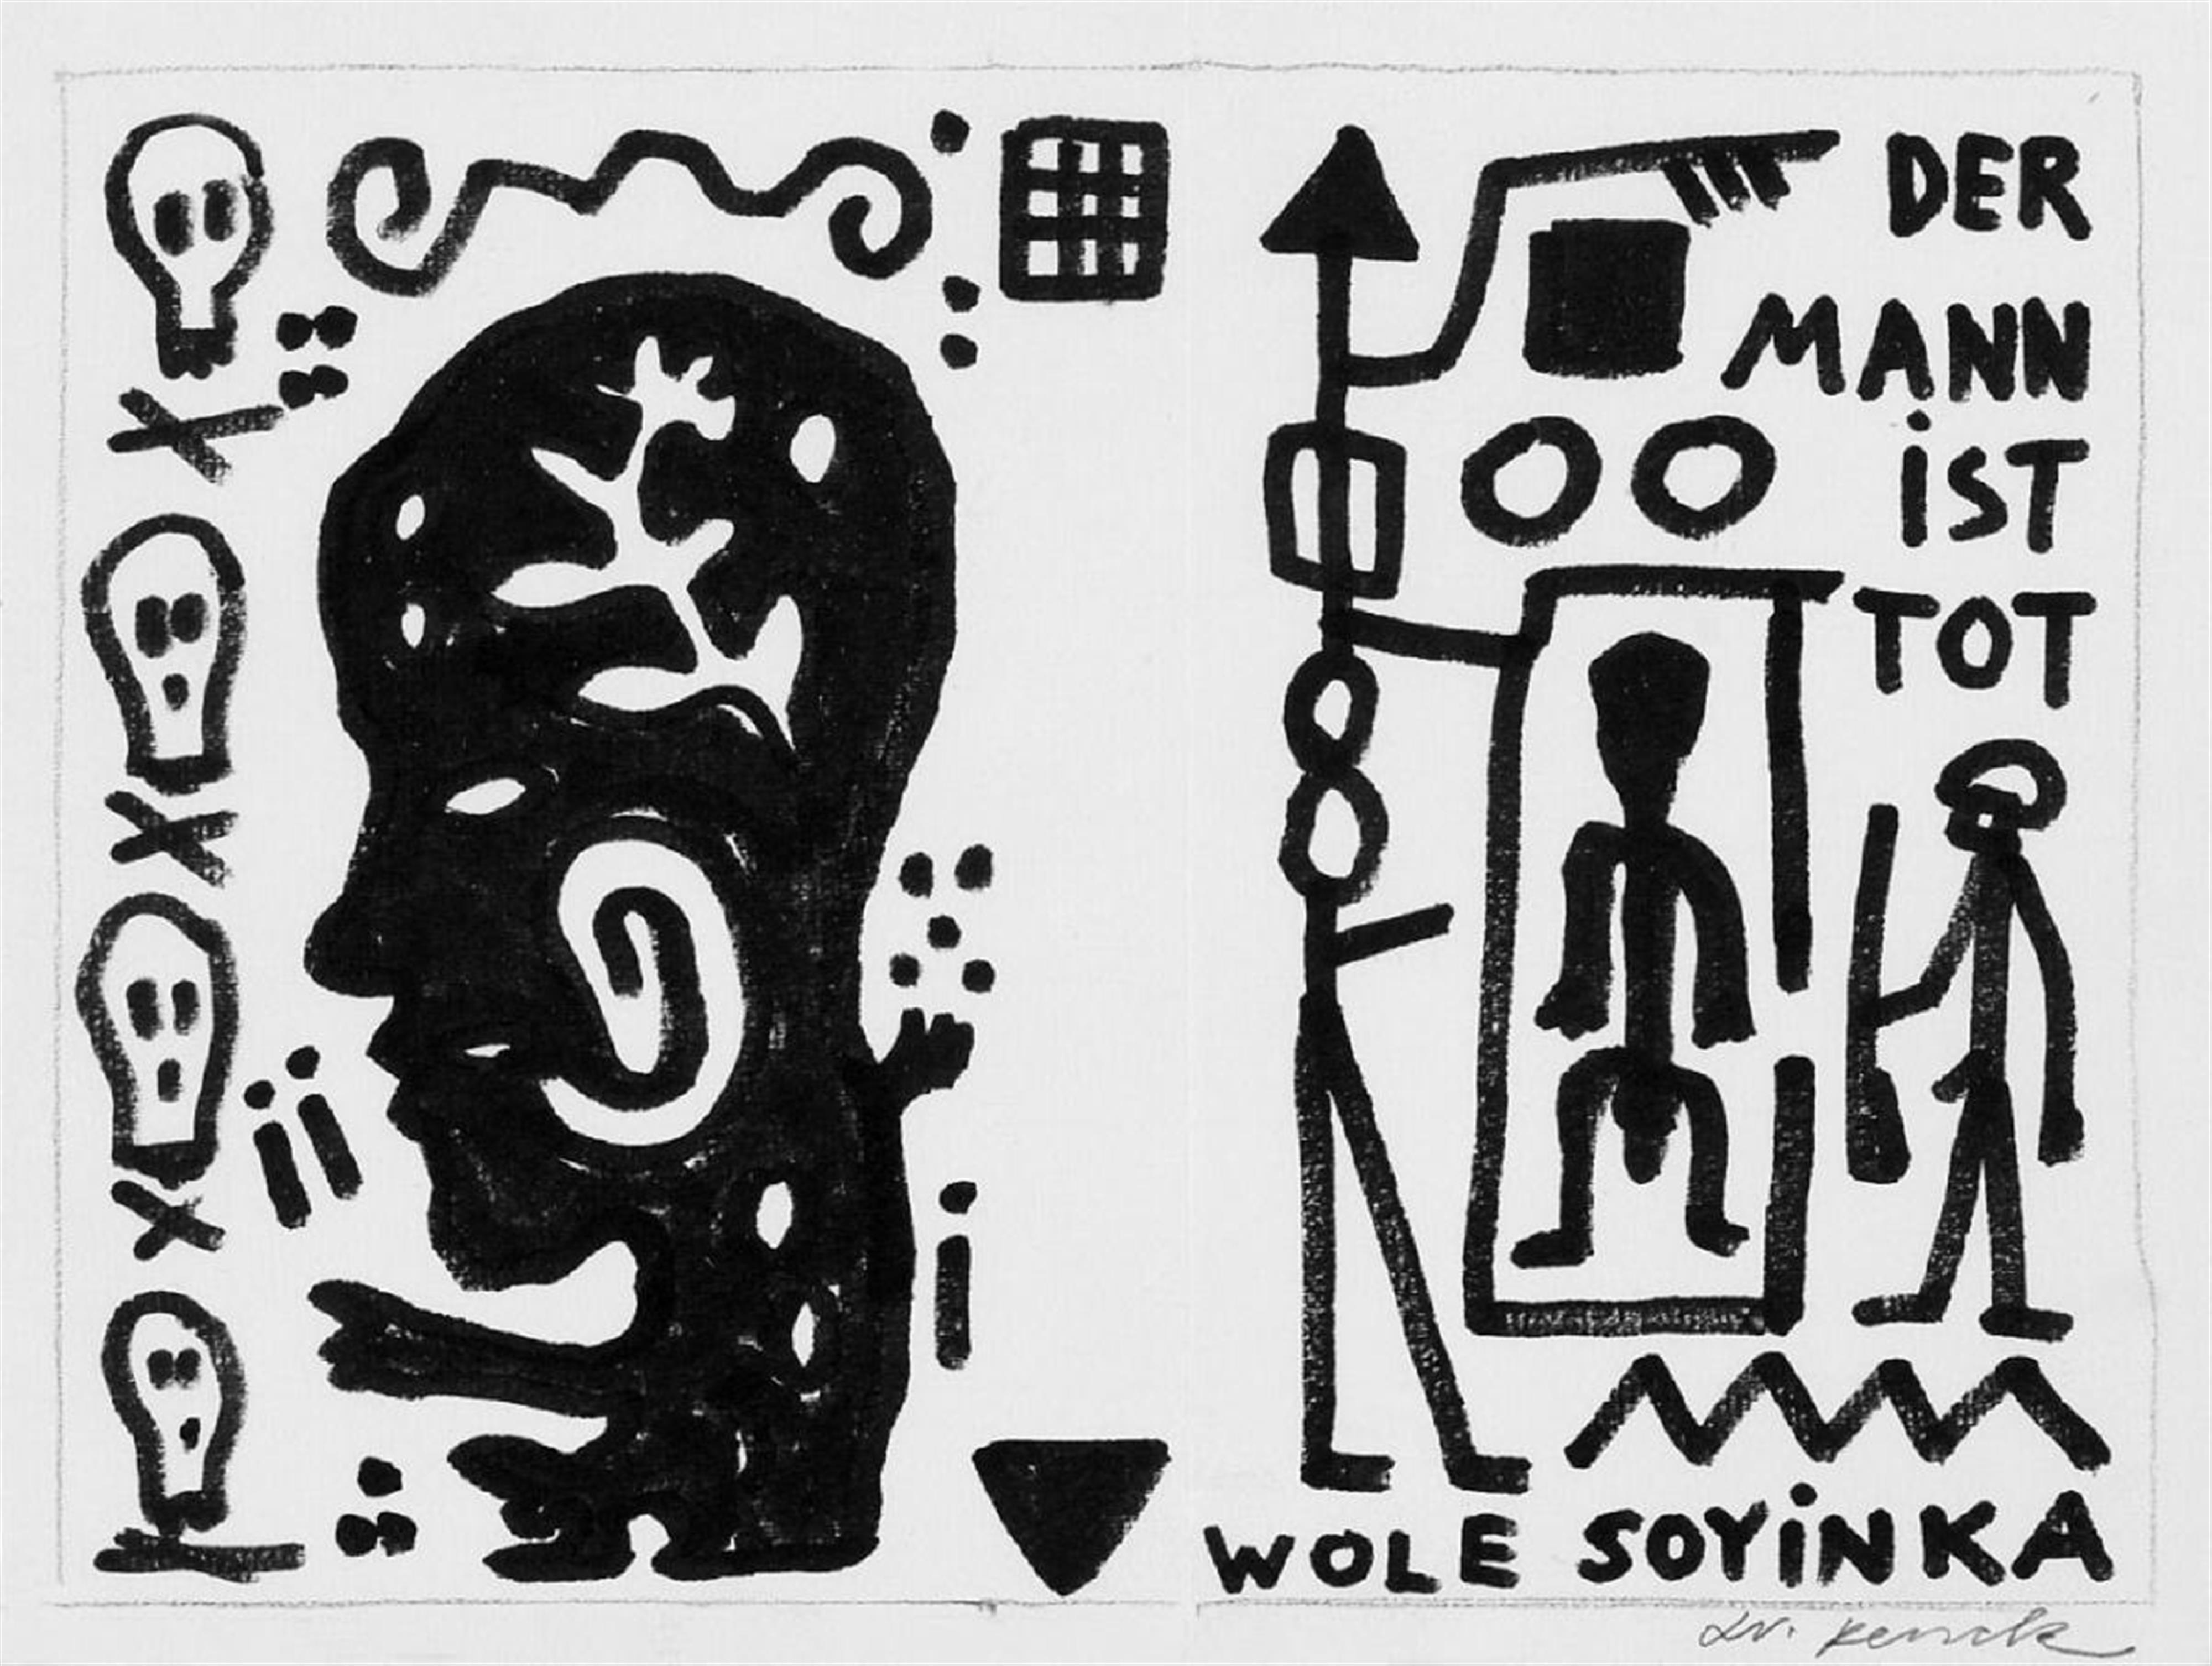 A.R. Penck - Der Mann ist tot /Wole Soyinka - image-1